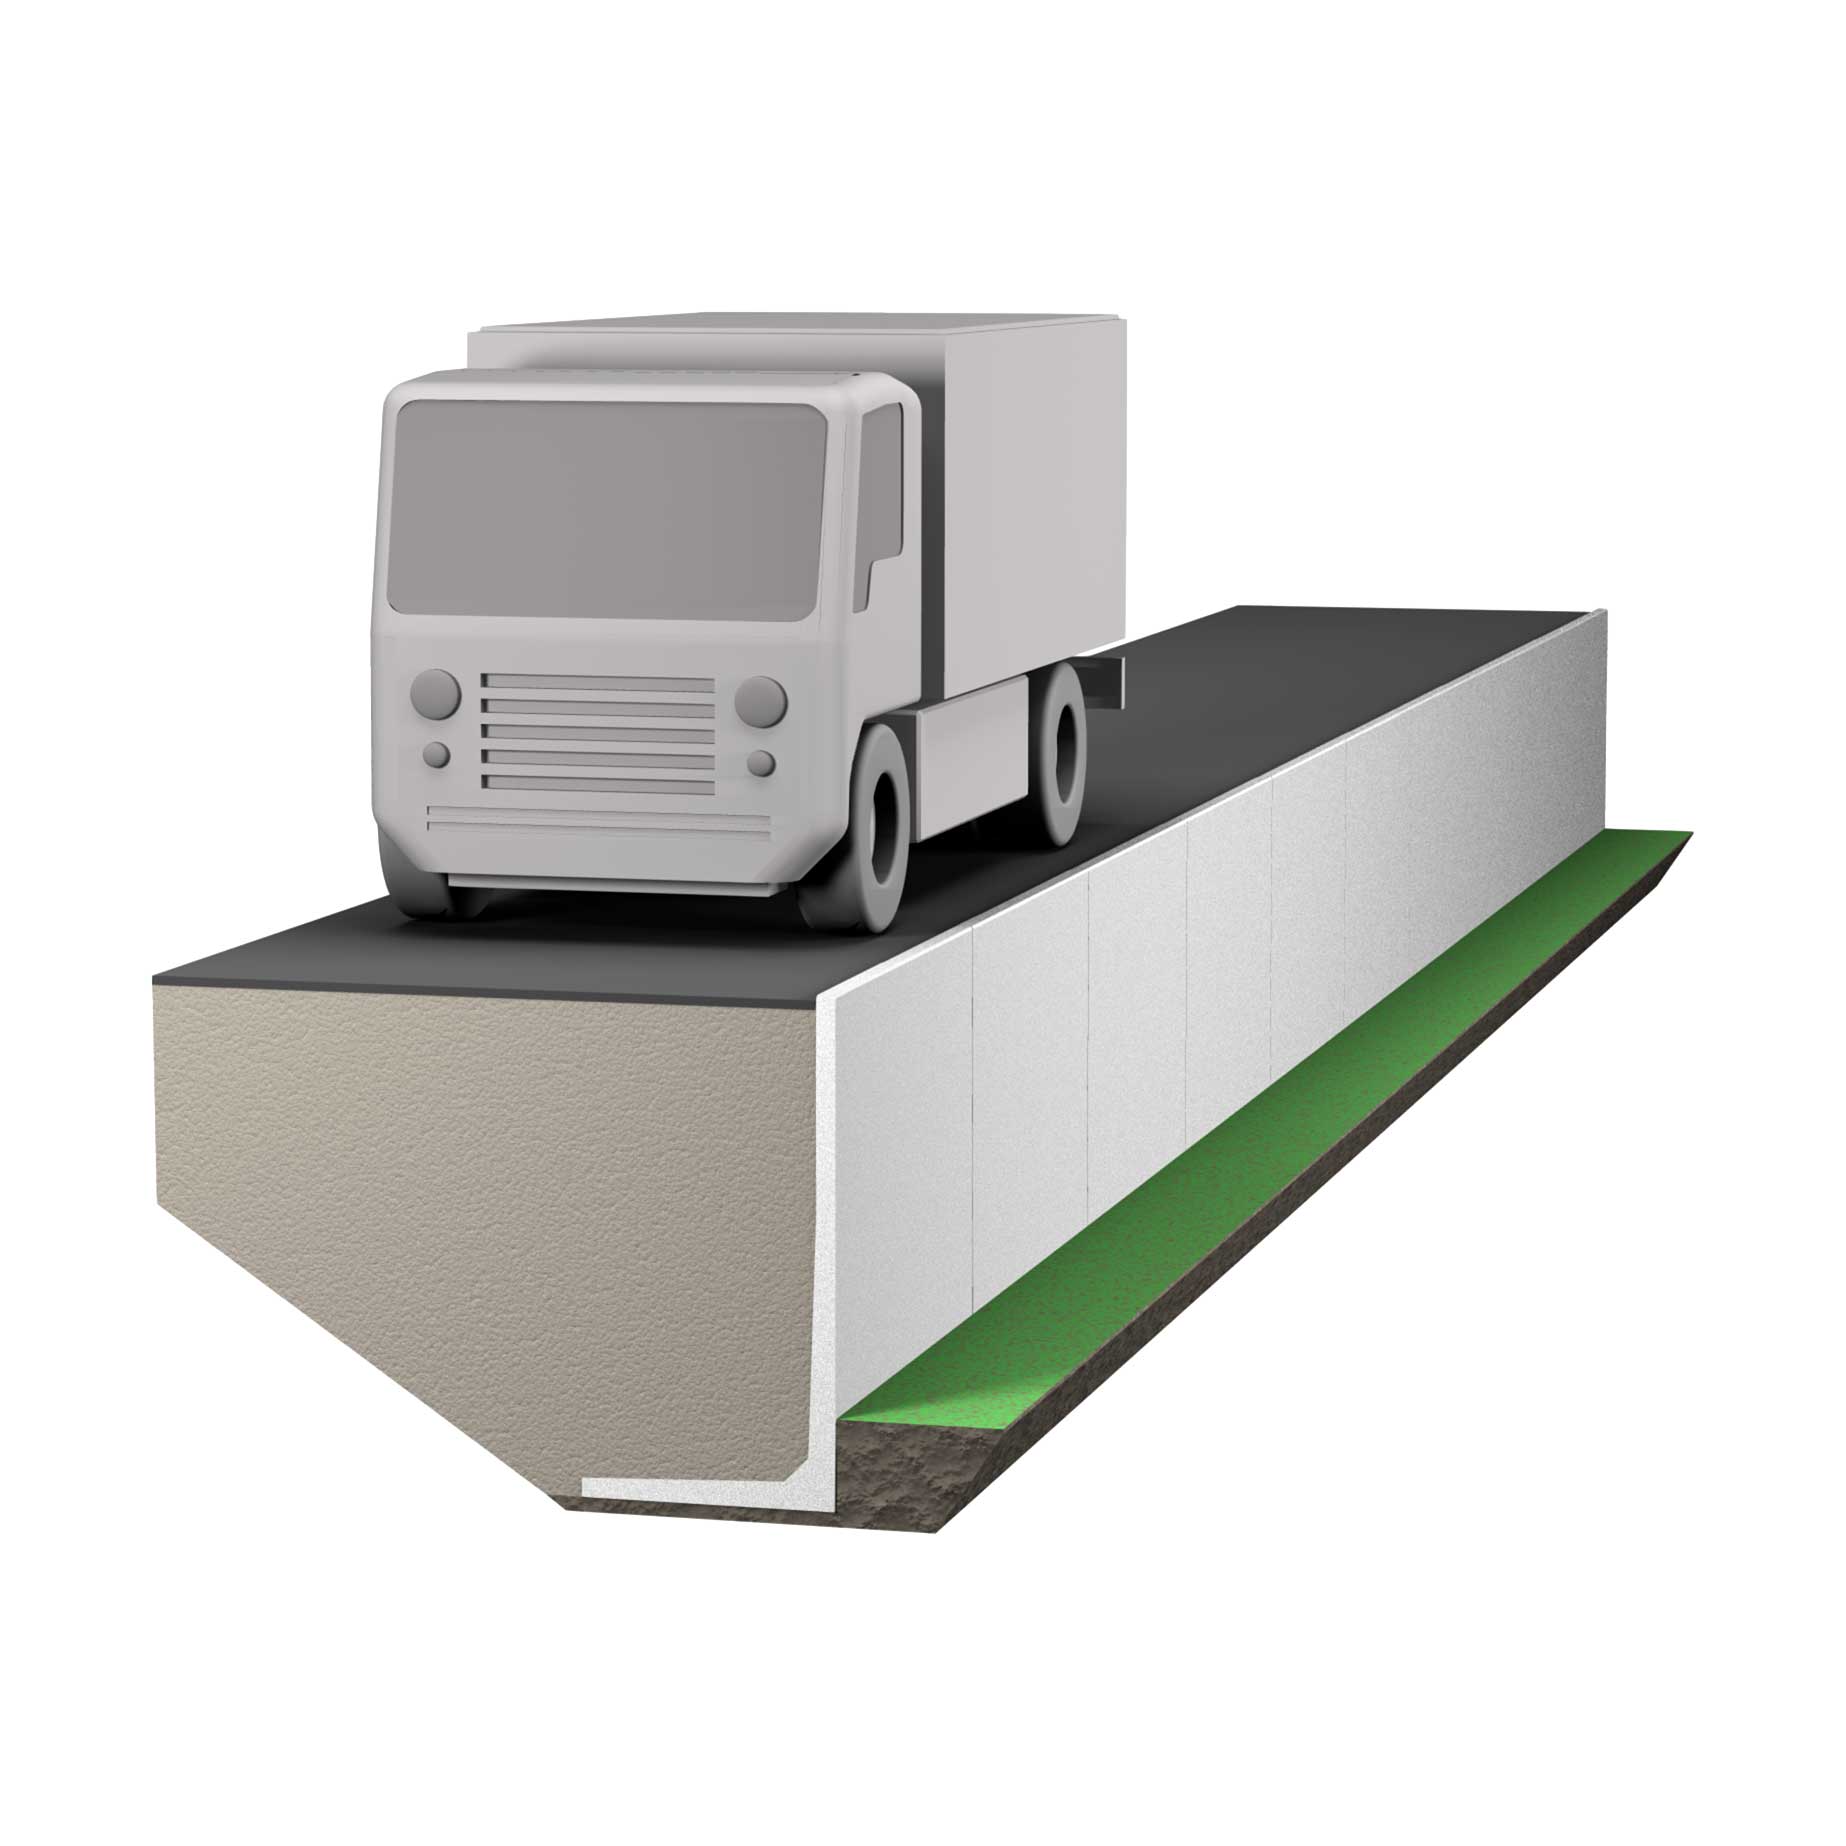 L-stöd i betong där krav finns på att klara högre marktryck -  för medeltung fordons- och trucktrafik.